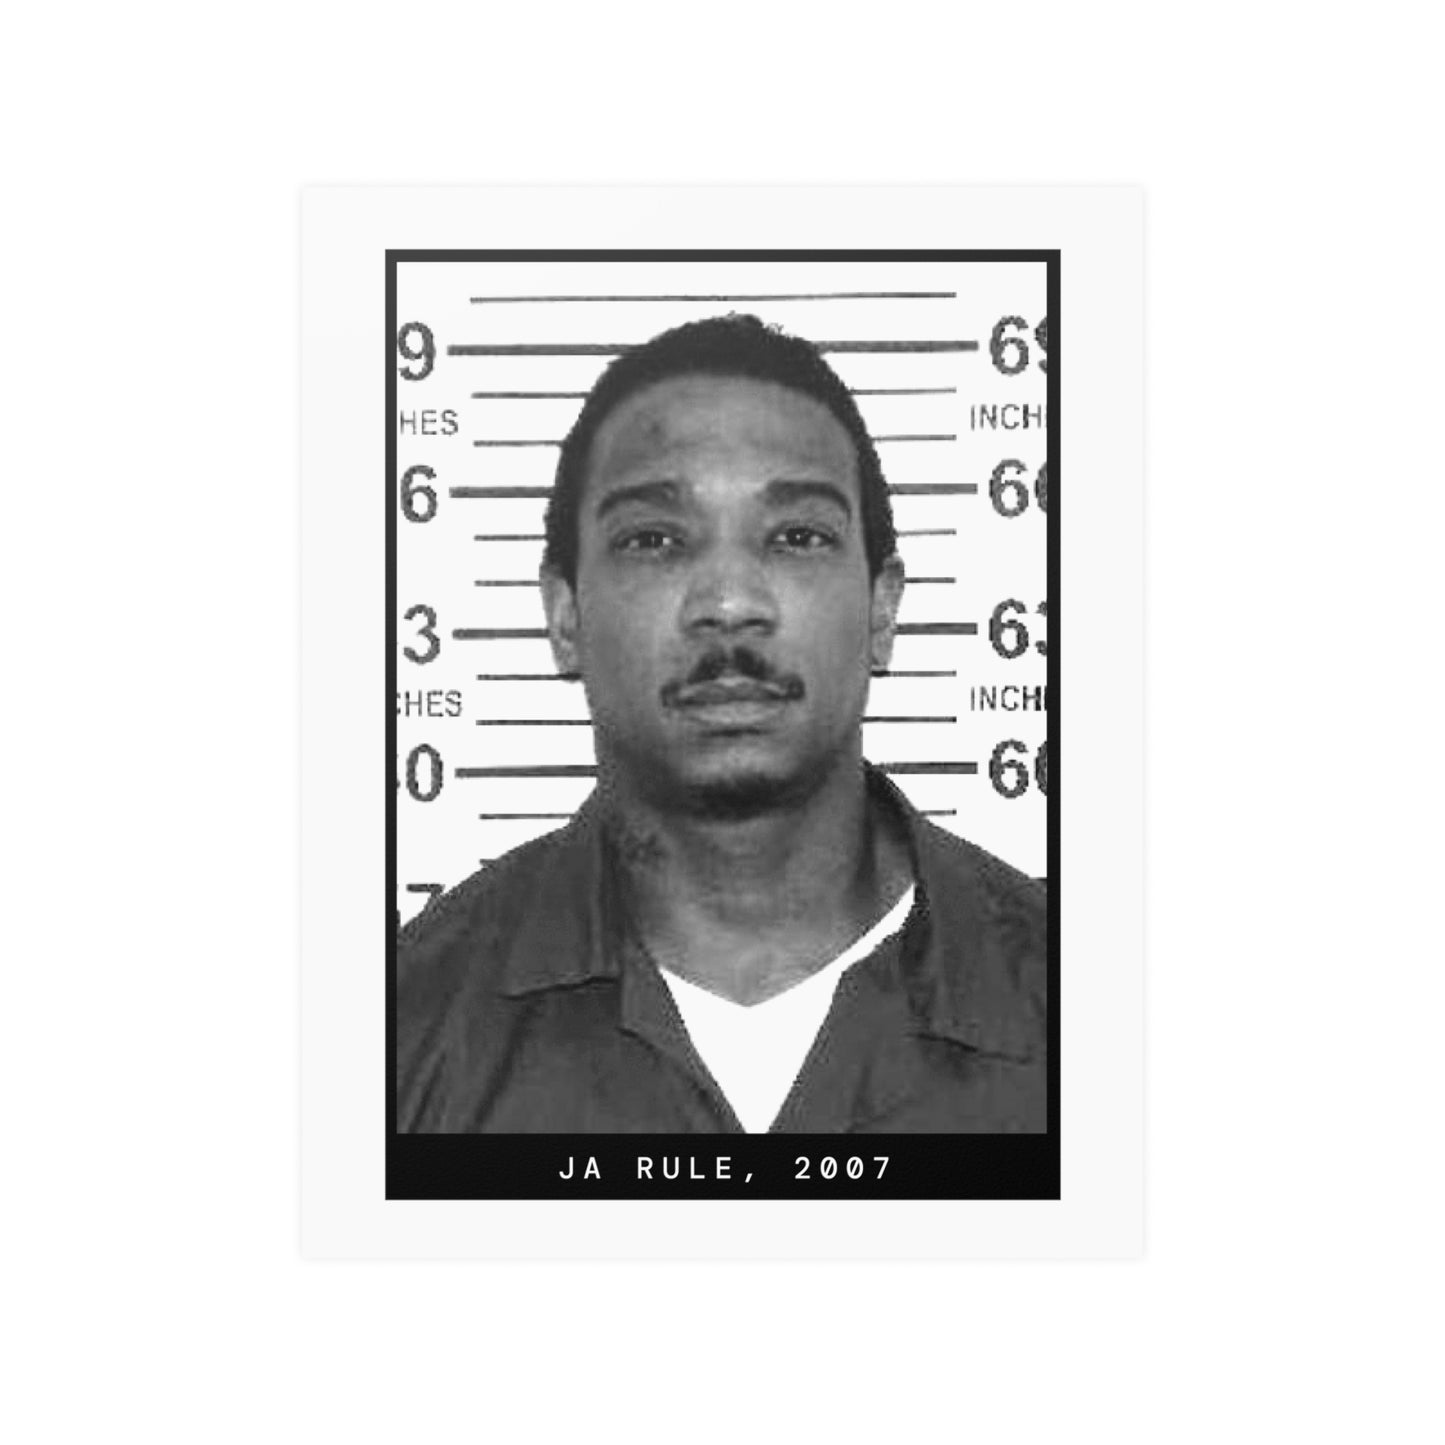 Ja Rule, 2007 Rapper Mugshot Poster